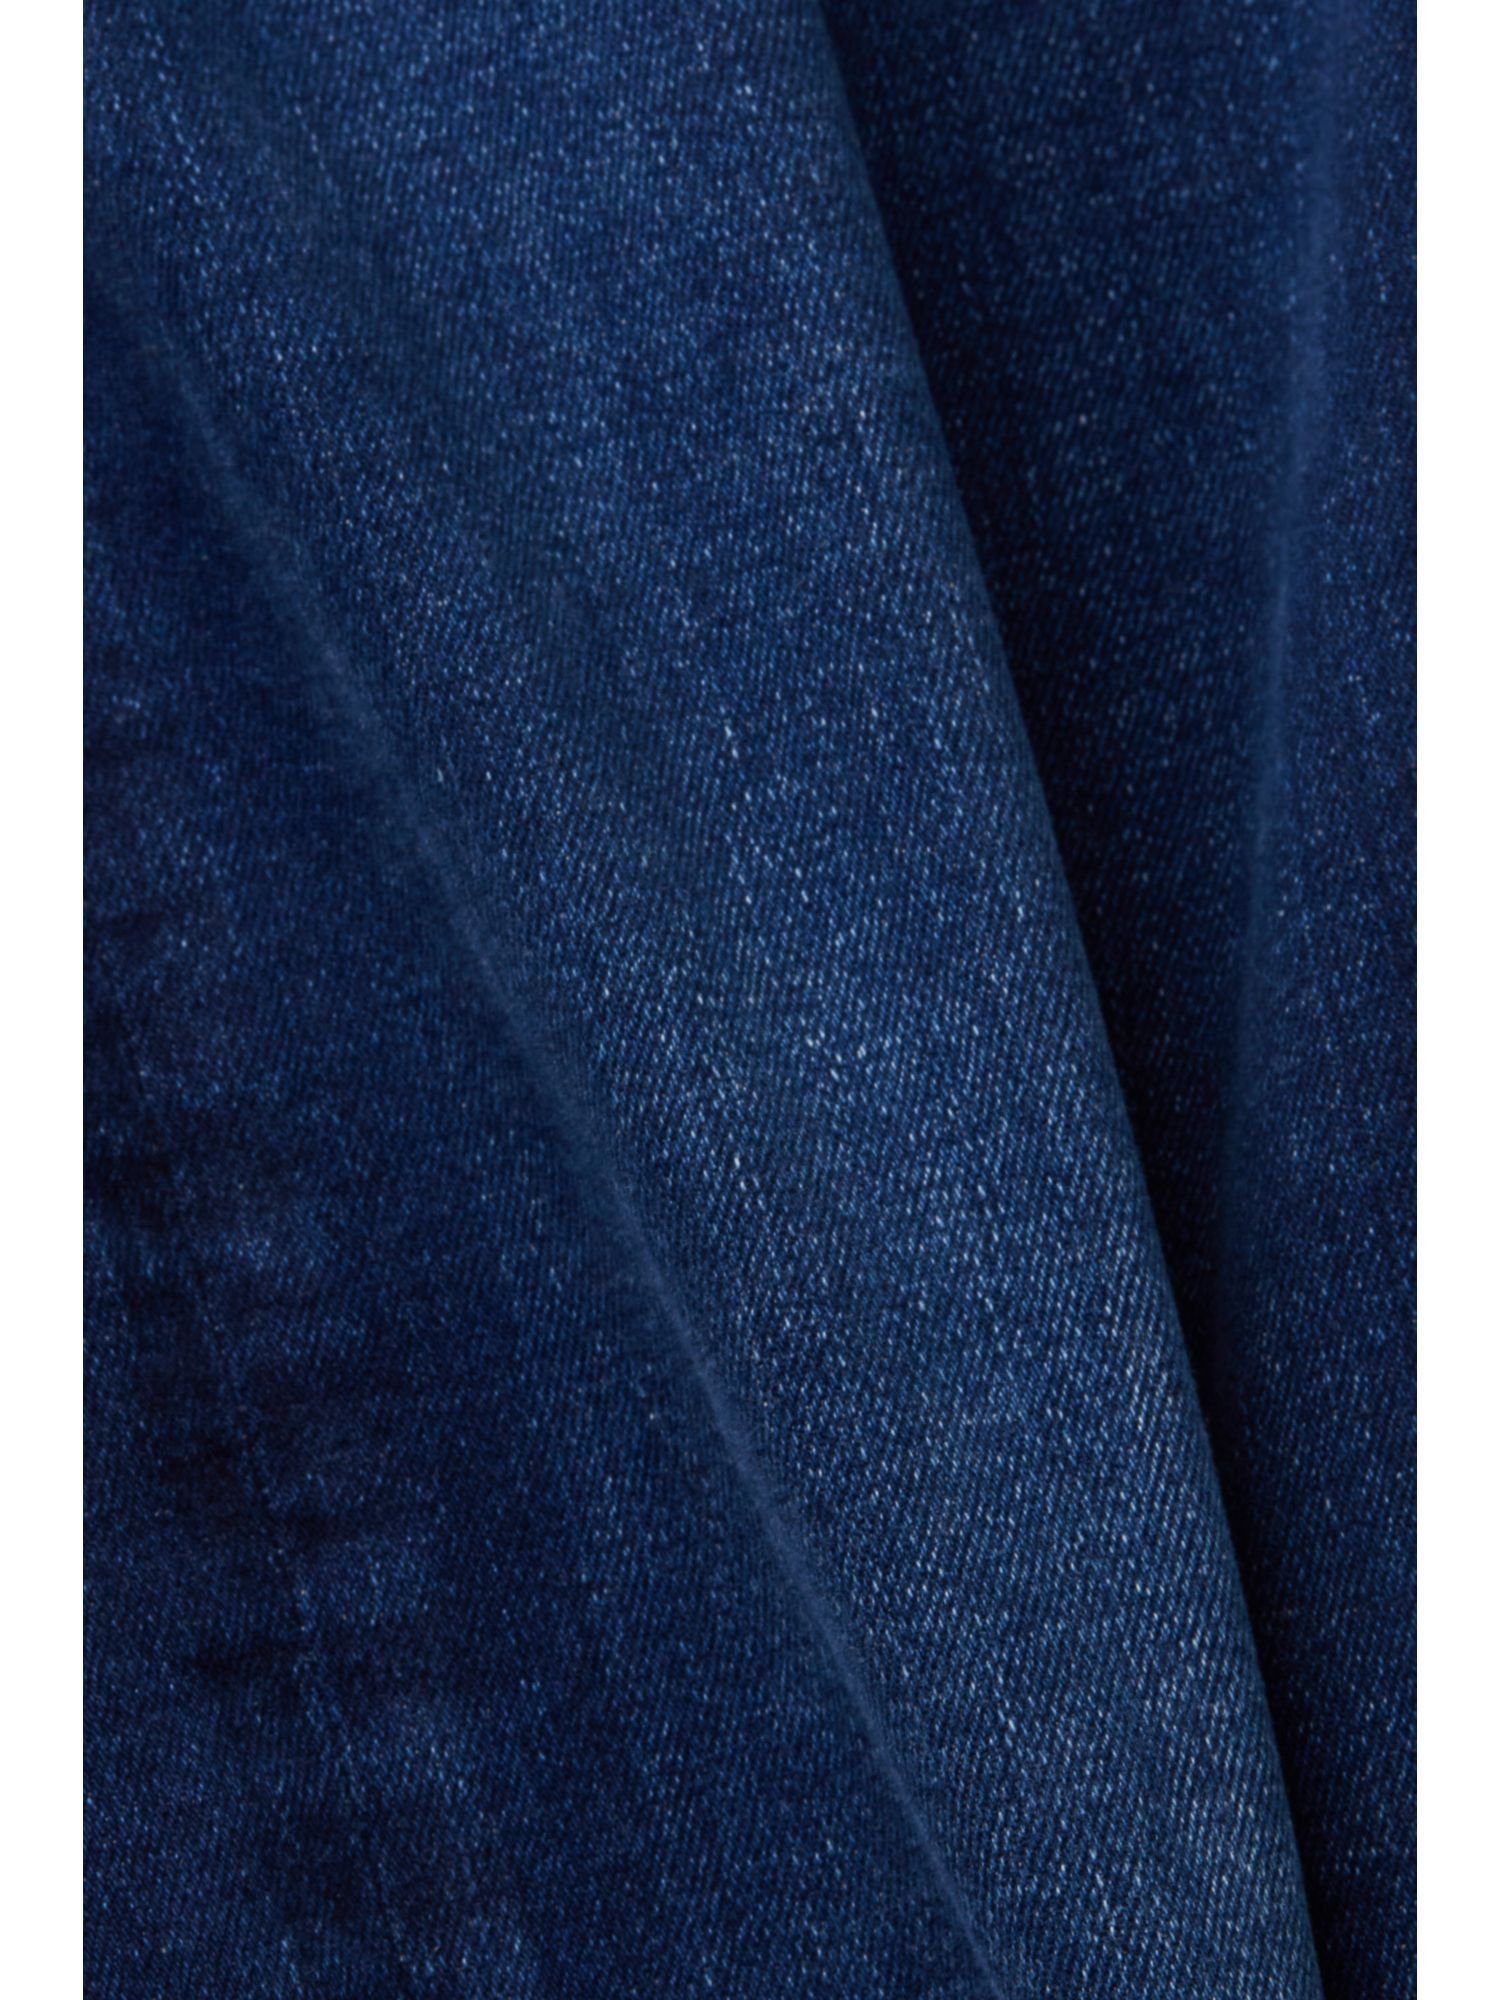 Straight-Jeans LIGHT Baumwollmix mit Bein, WASHED Esprit geradem Stretchjeans BLUE